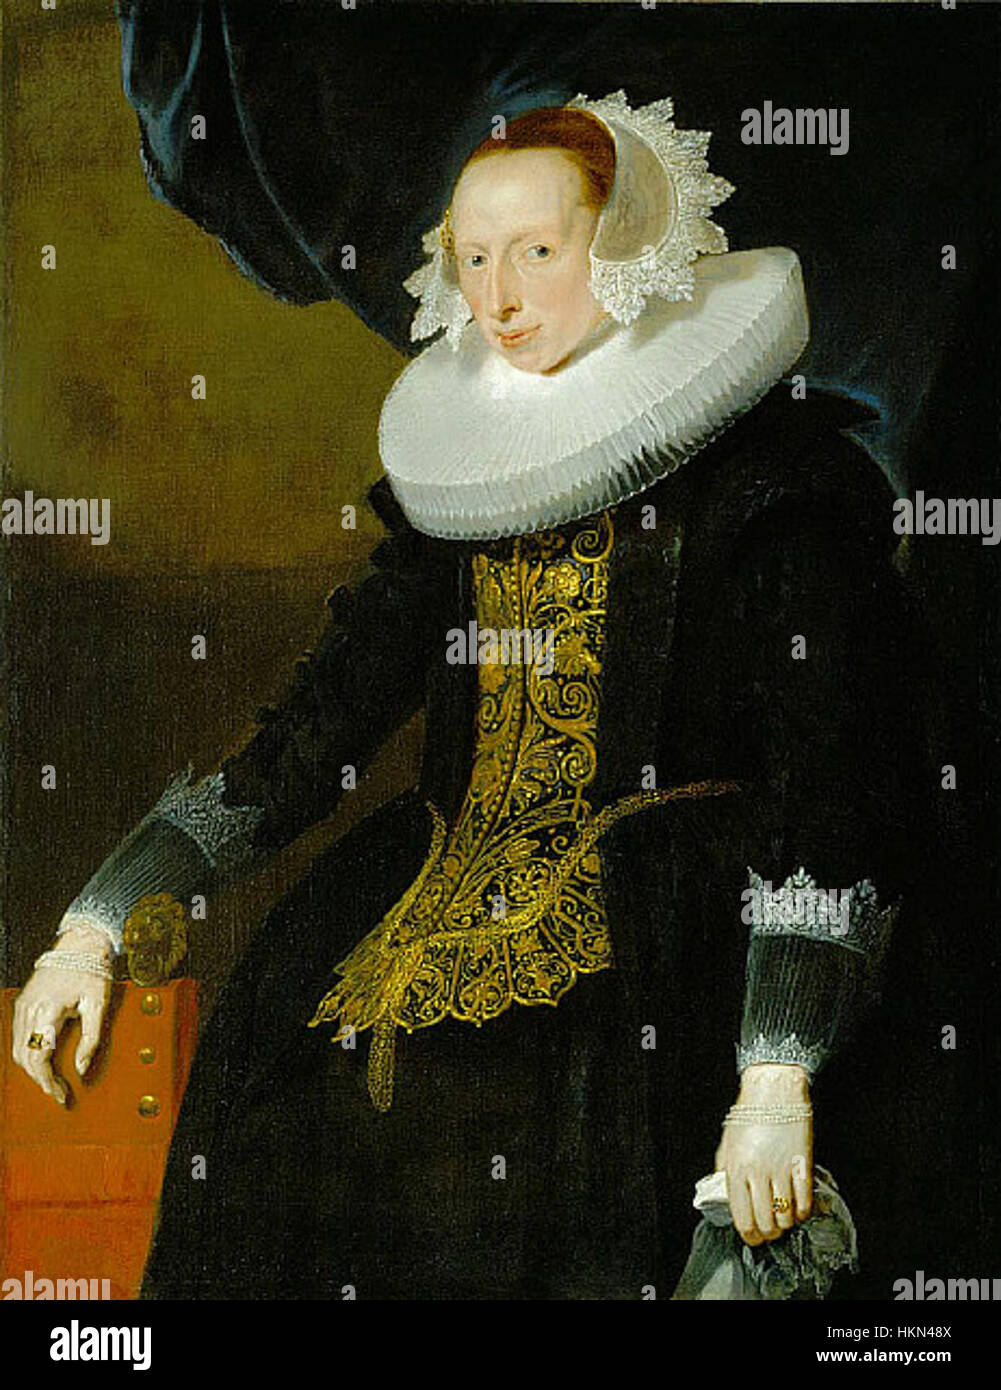 Pieter Claesz. Soutman - Portrait of a Woman Stock Photo